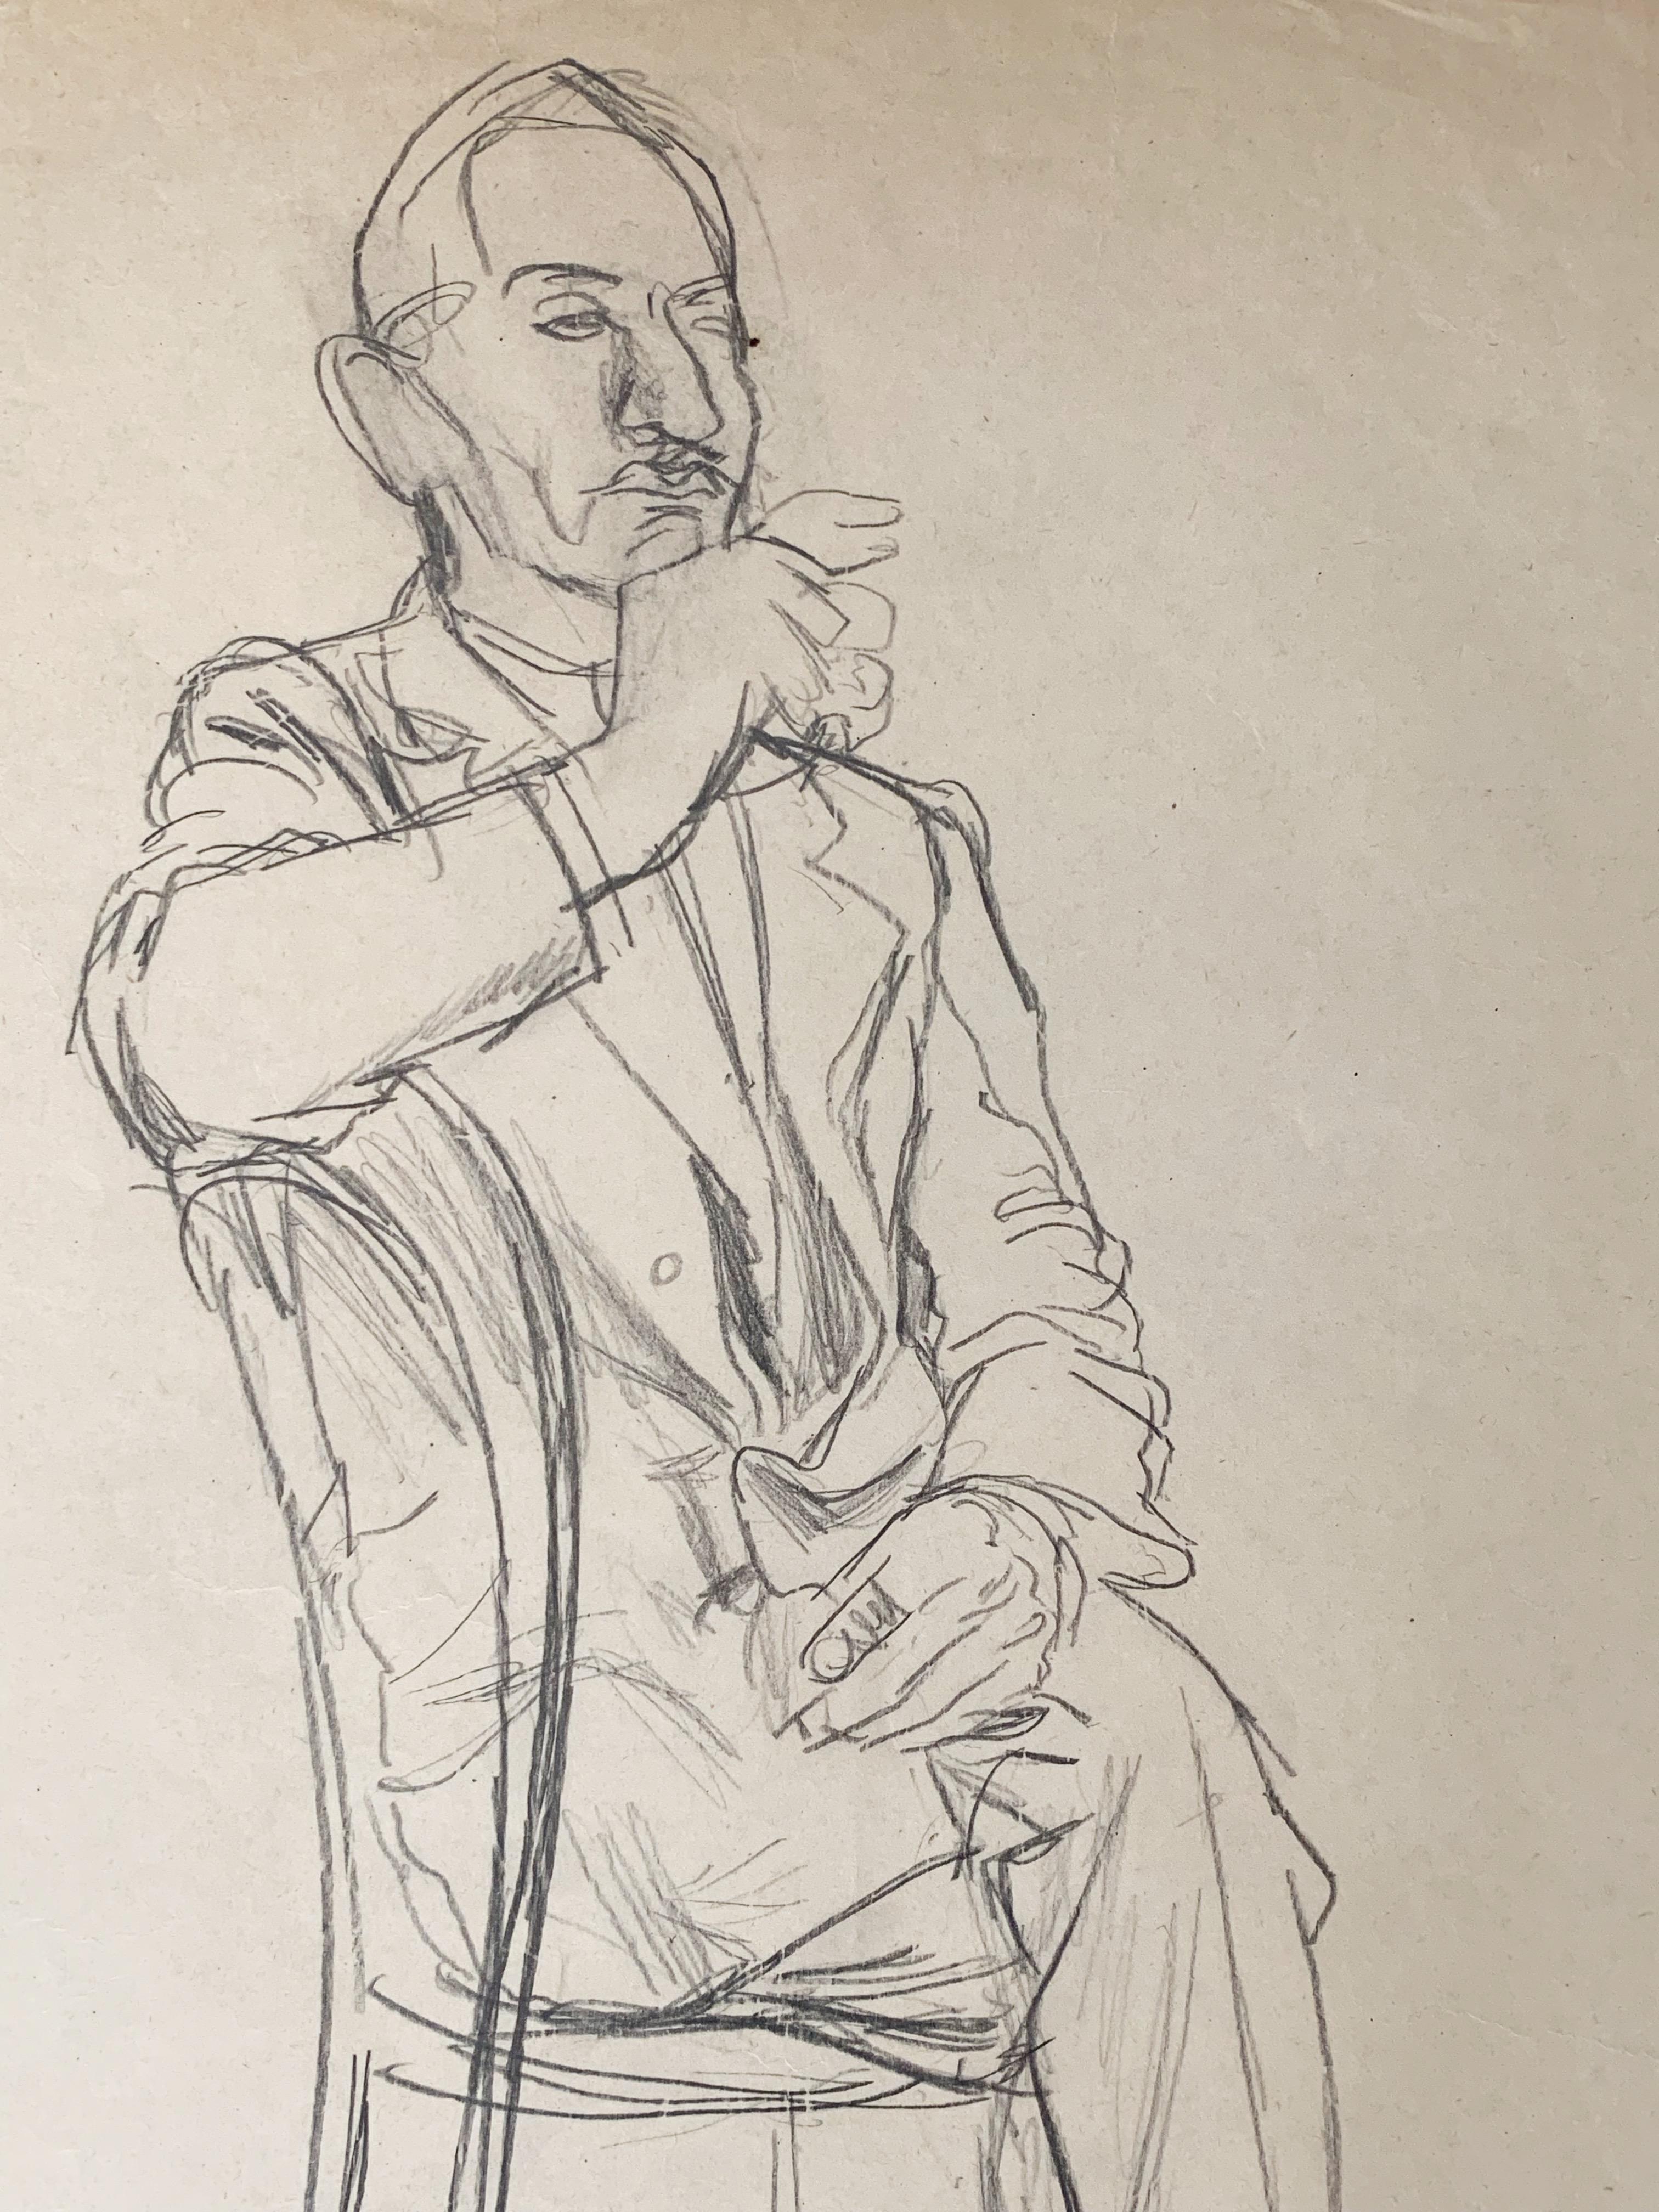 Rudolf Schlichter (1890-1955)
Mann sitzend mit einer Zigarette
Schwarzer Stein auf Papier
Signiert 